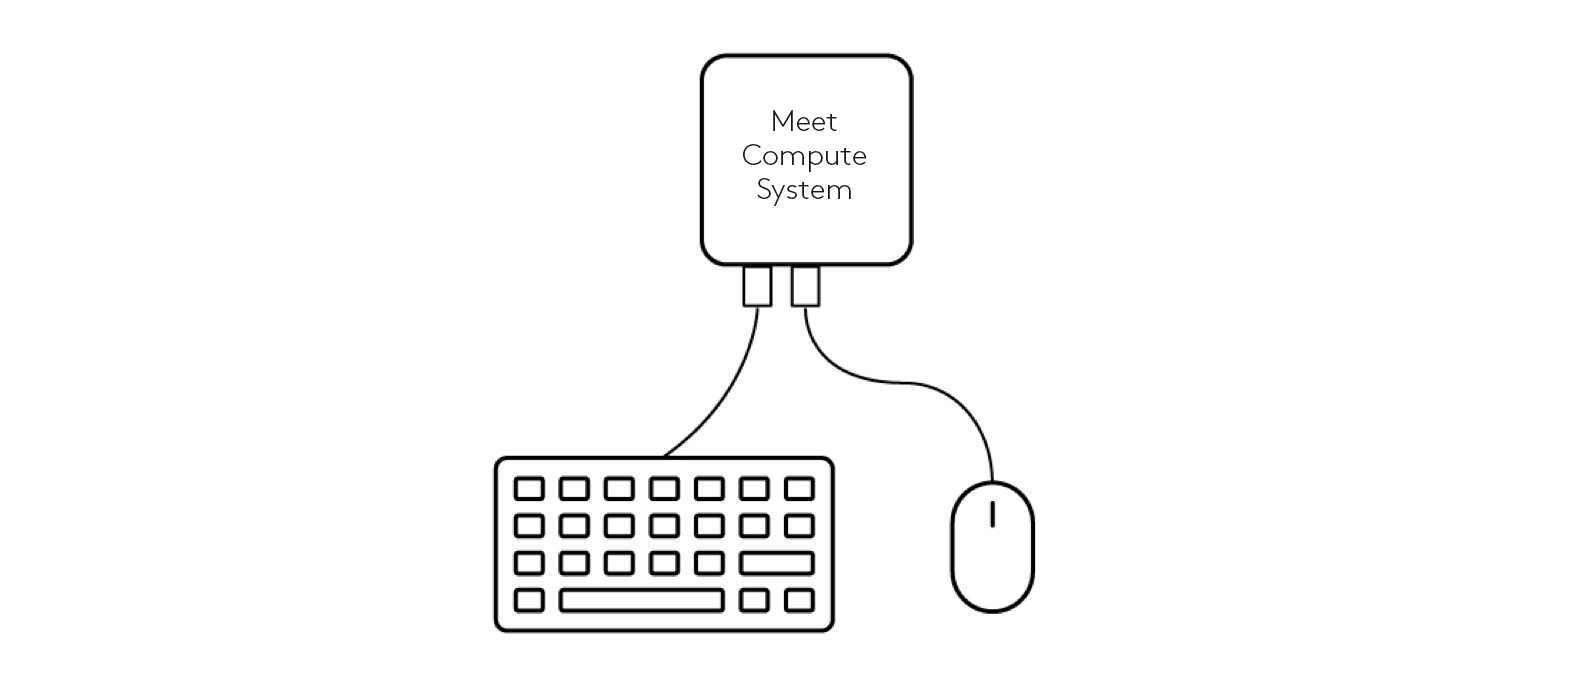 Diagrama de conexiones de teclado y ratón a Meet Compute System